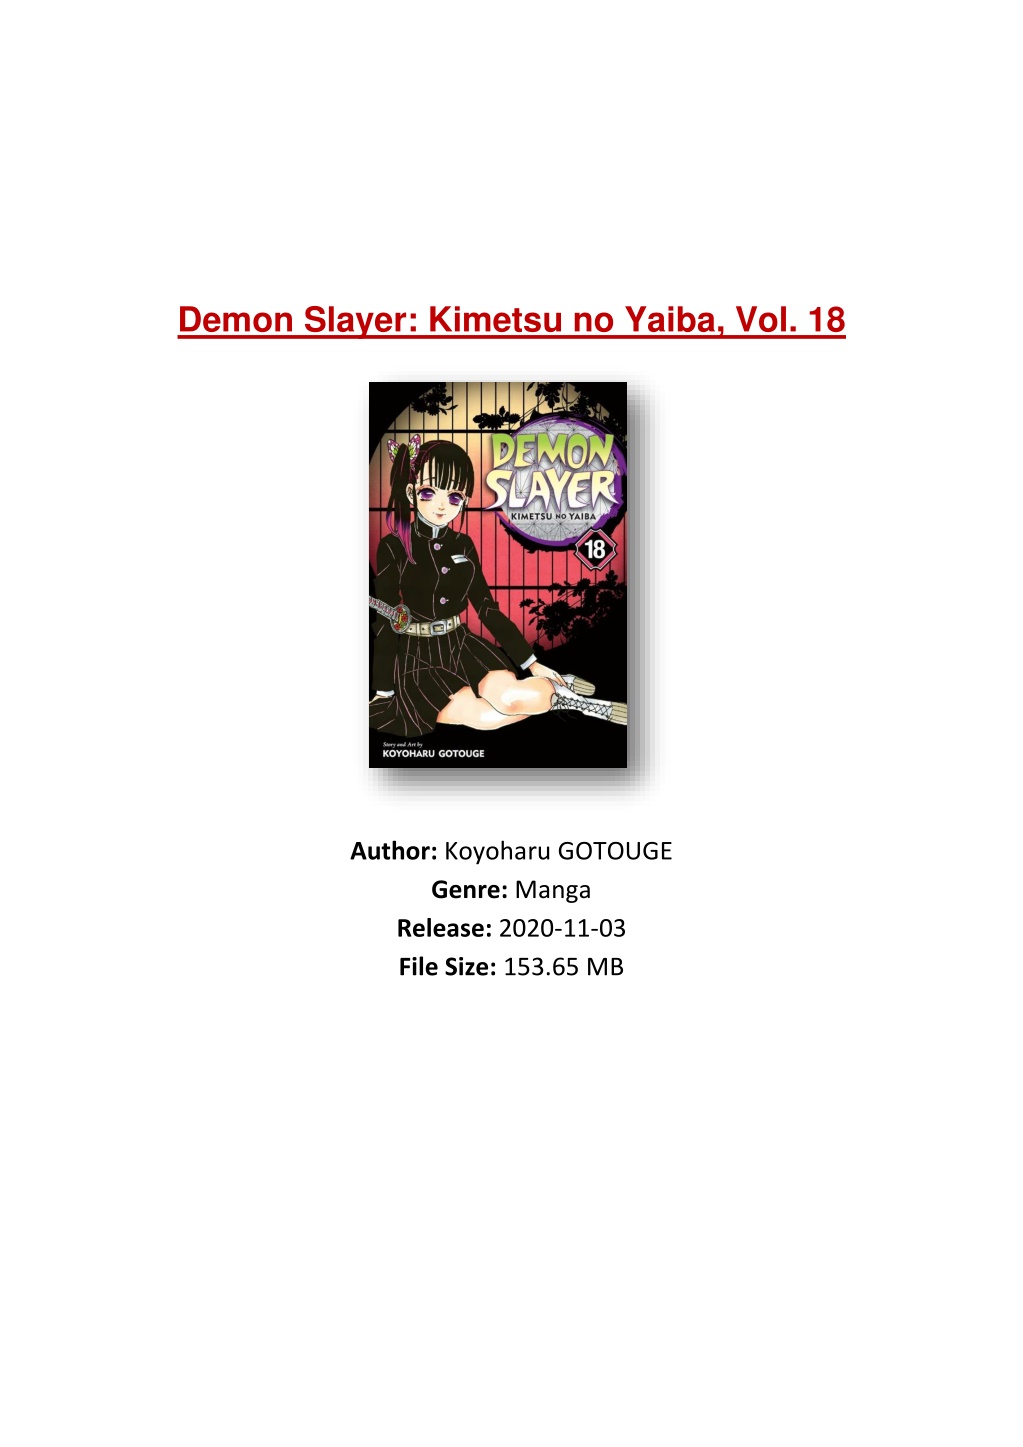 Demon Slayer: Kimetsu no Yaiba, Vol. 18 Manga eBook by Koyoharu Gotouge -  EPUB Book